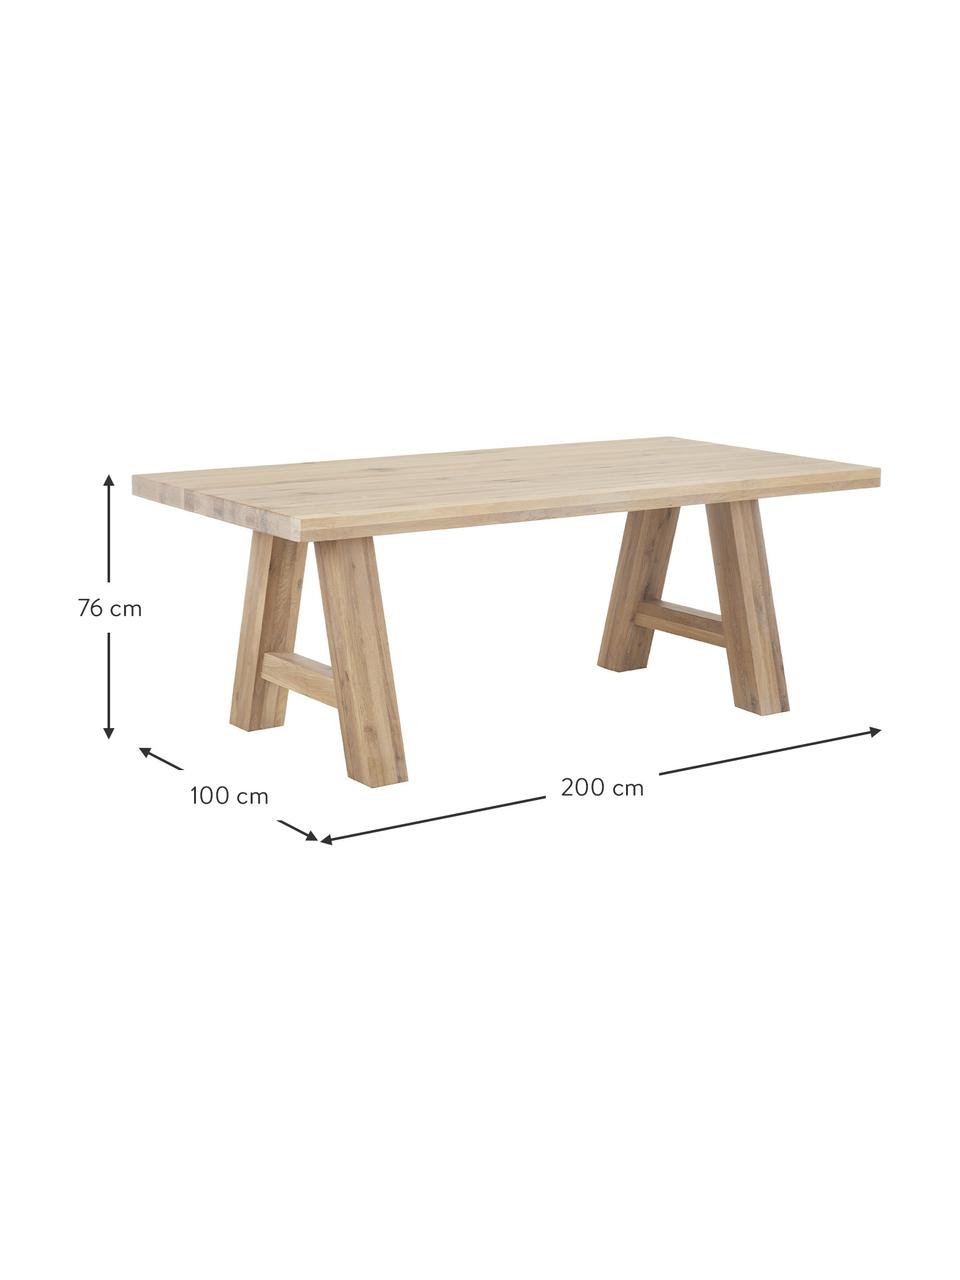 Jedálenský stôl z dubového dreva Ashton, rôzne veľkosti, Masívne dubové drevo, jemne naolejované 100% FSC drevo z udržateľného lesného hospodárstva, Dubové drevo, ošetrené svetlým olejom, Š 220 x H 100 cm